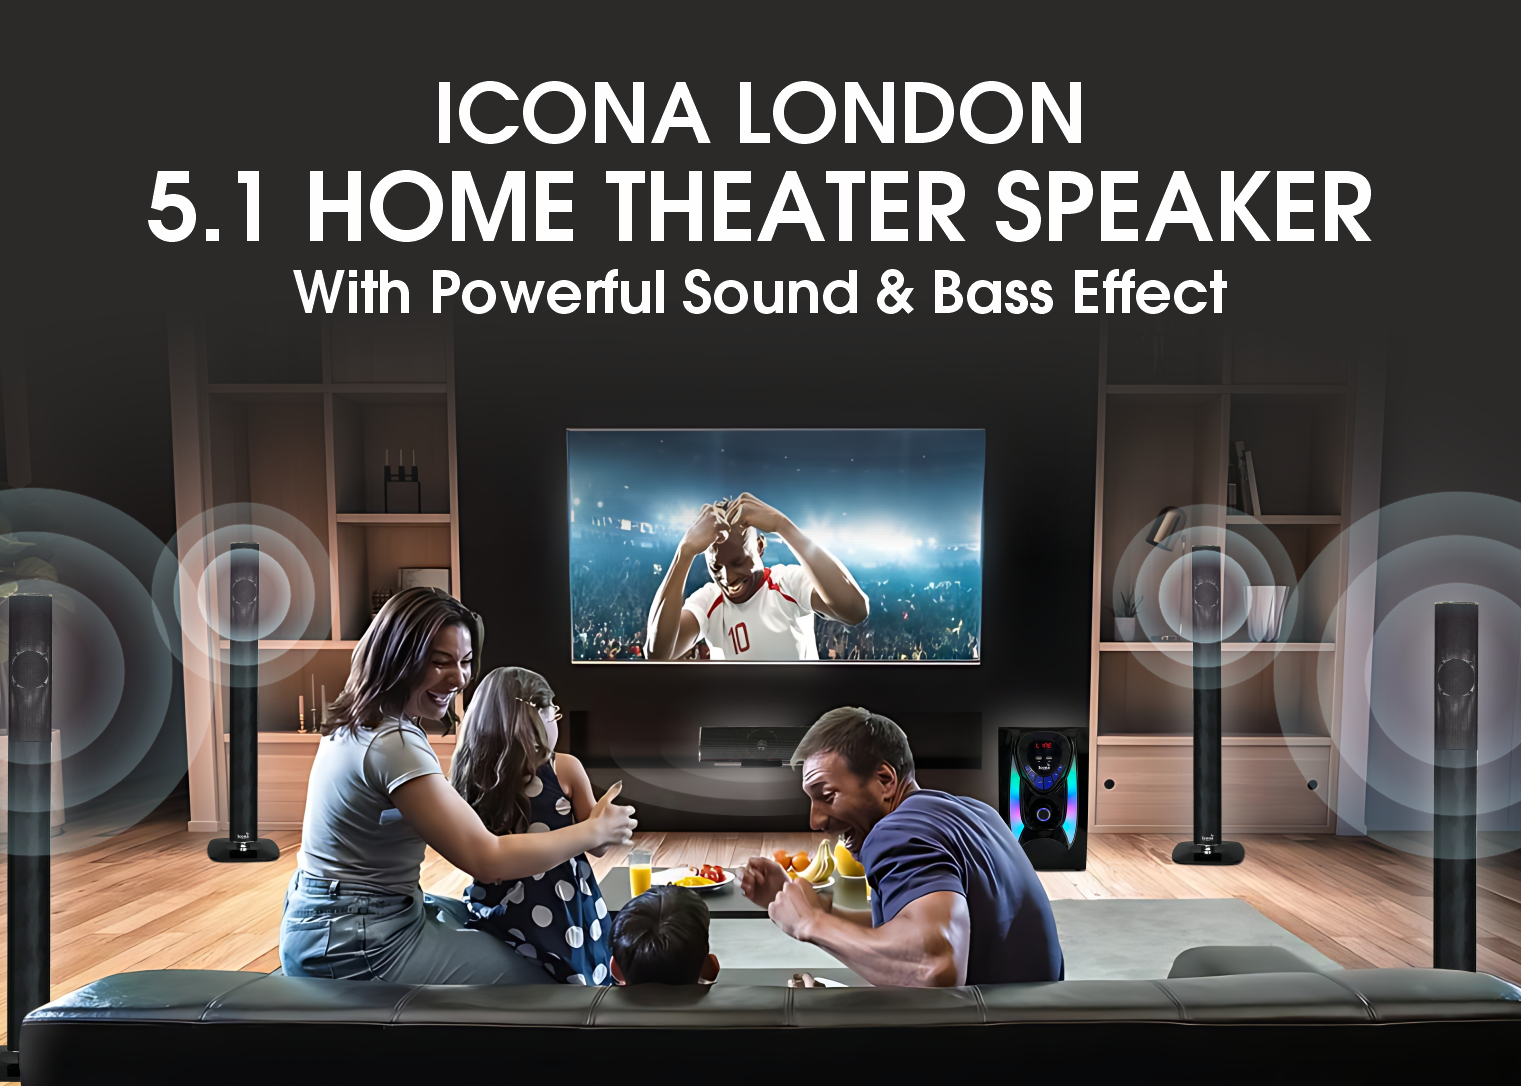 5.1 Home Theater Speaker